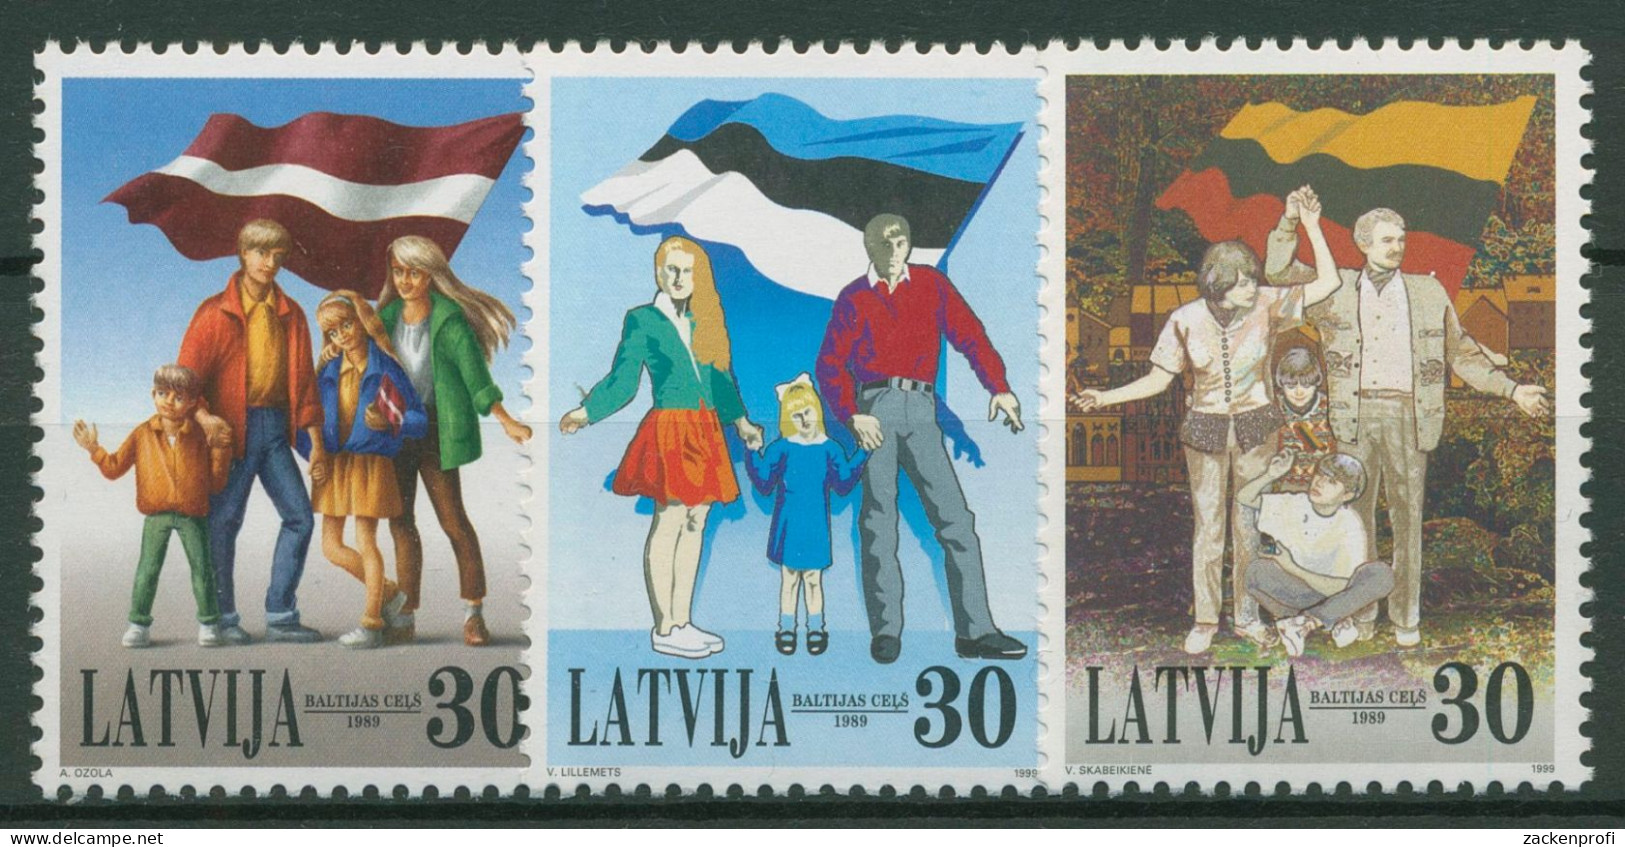 Lettland 1999 Jahrestag Des Baltischen Weges Blockeinzelmarken 507/09 Postfrisch - Lettonie